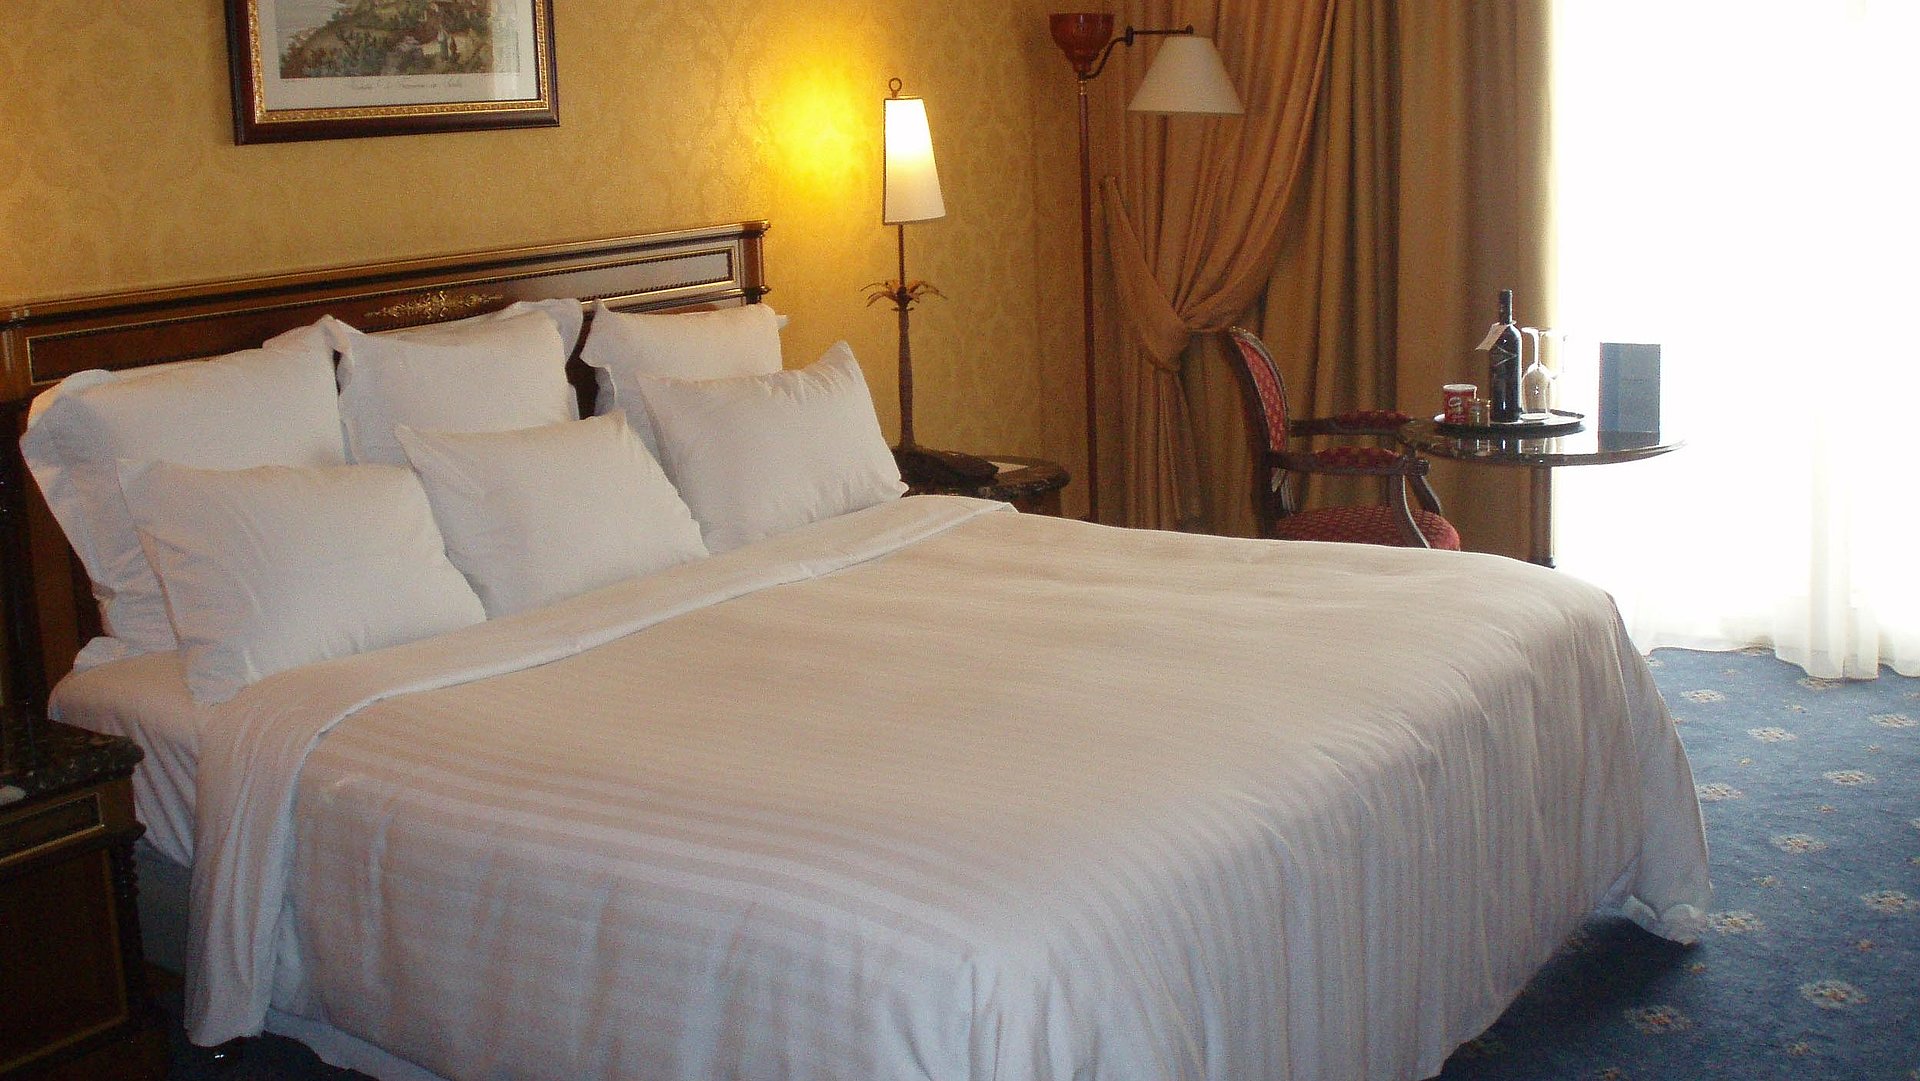 Hotels für Gruppen in Franken - sehr ordentliches Hotelzimmer mit großem Bett, warmer Nachtlampe und mittelgroßem Wandgemälde